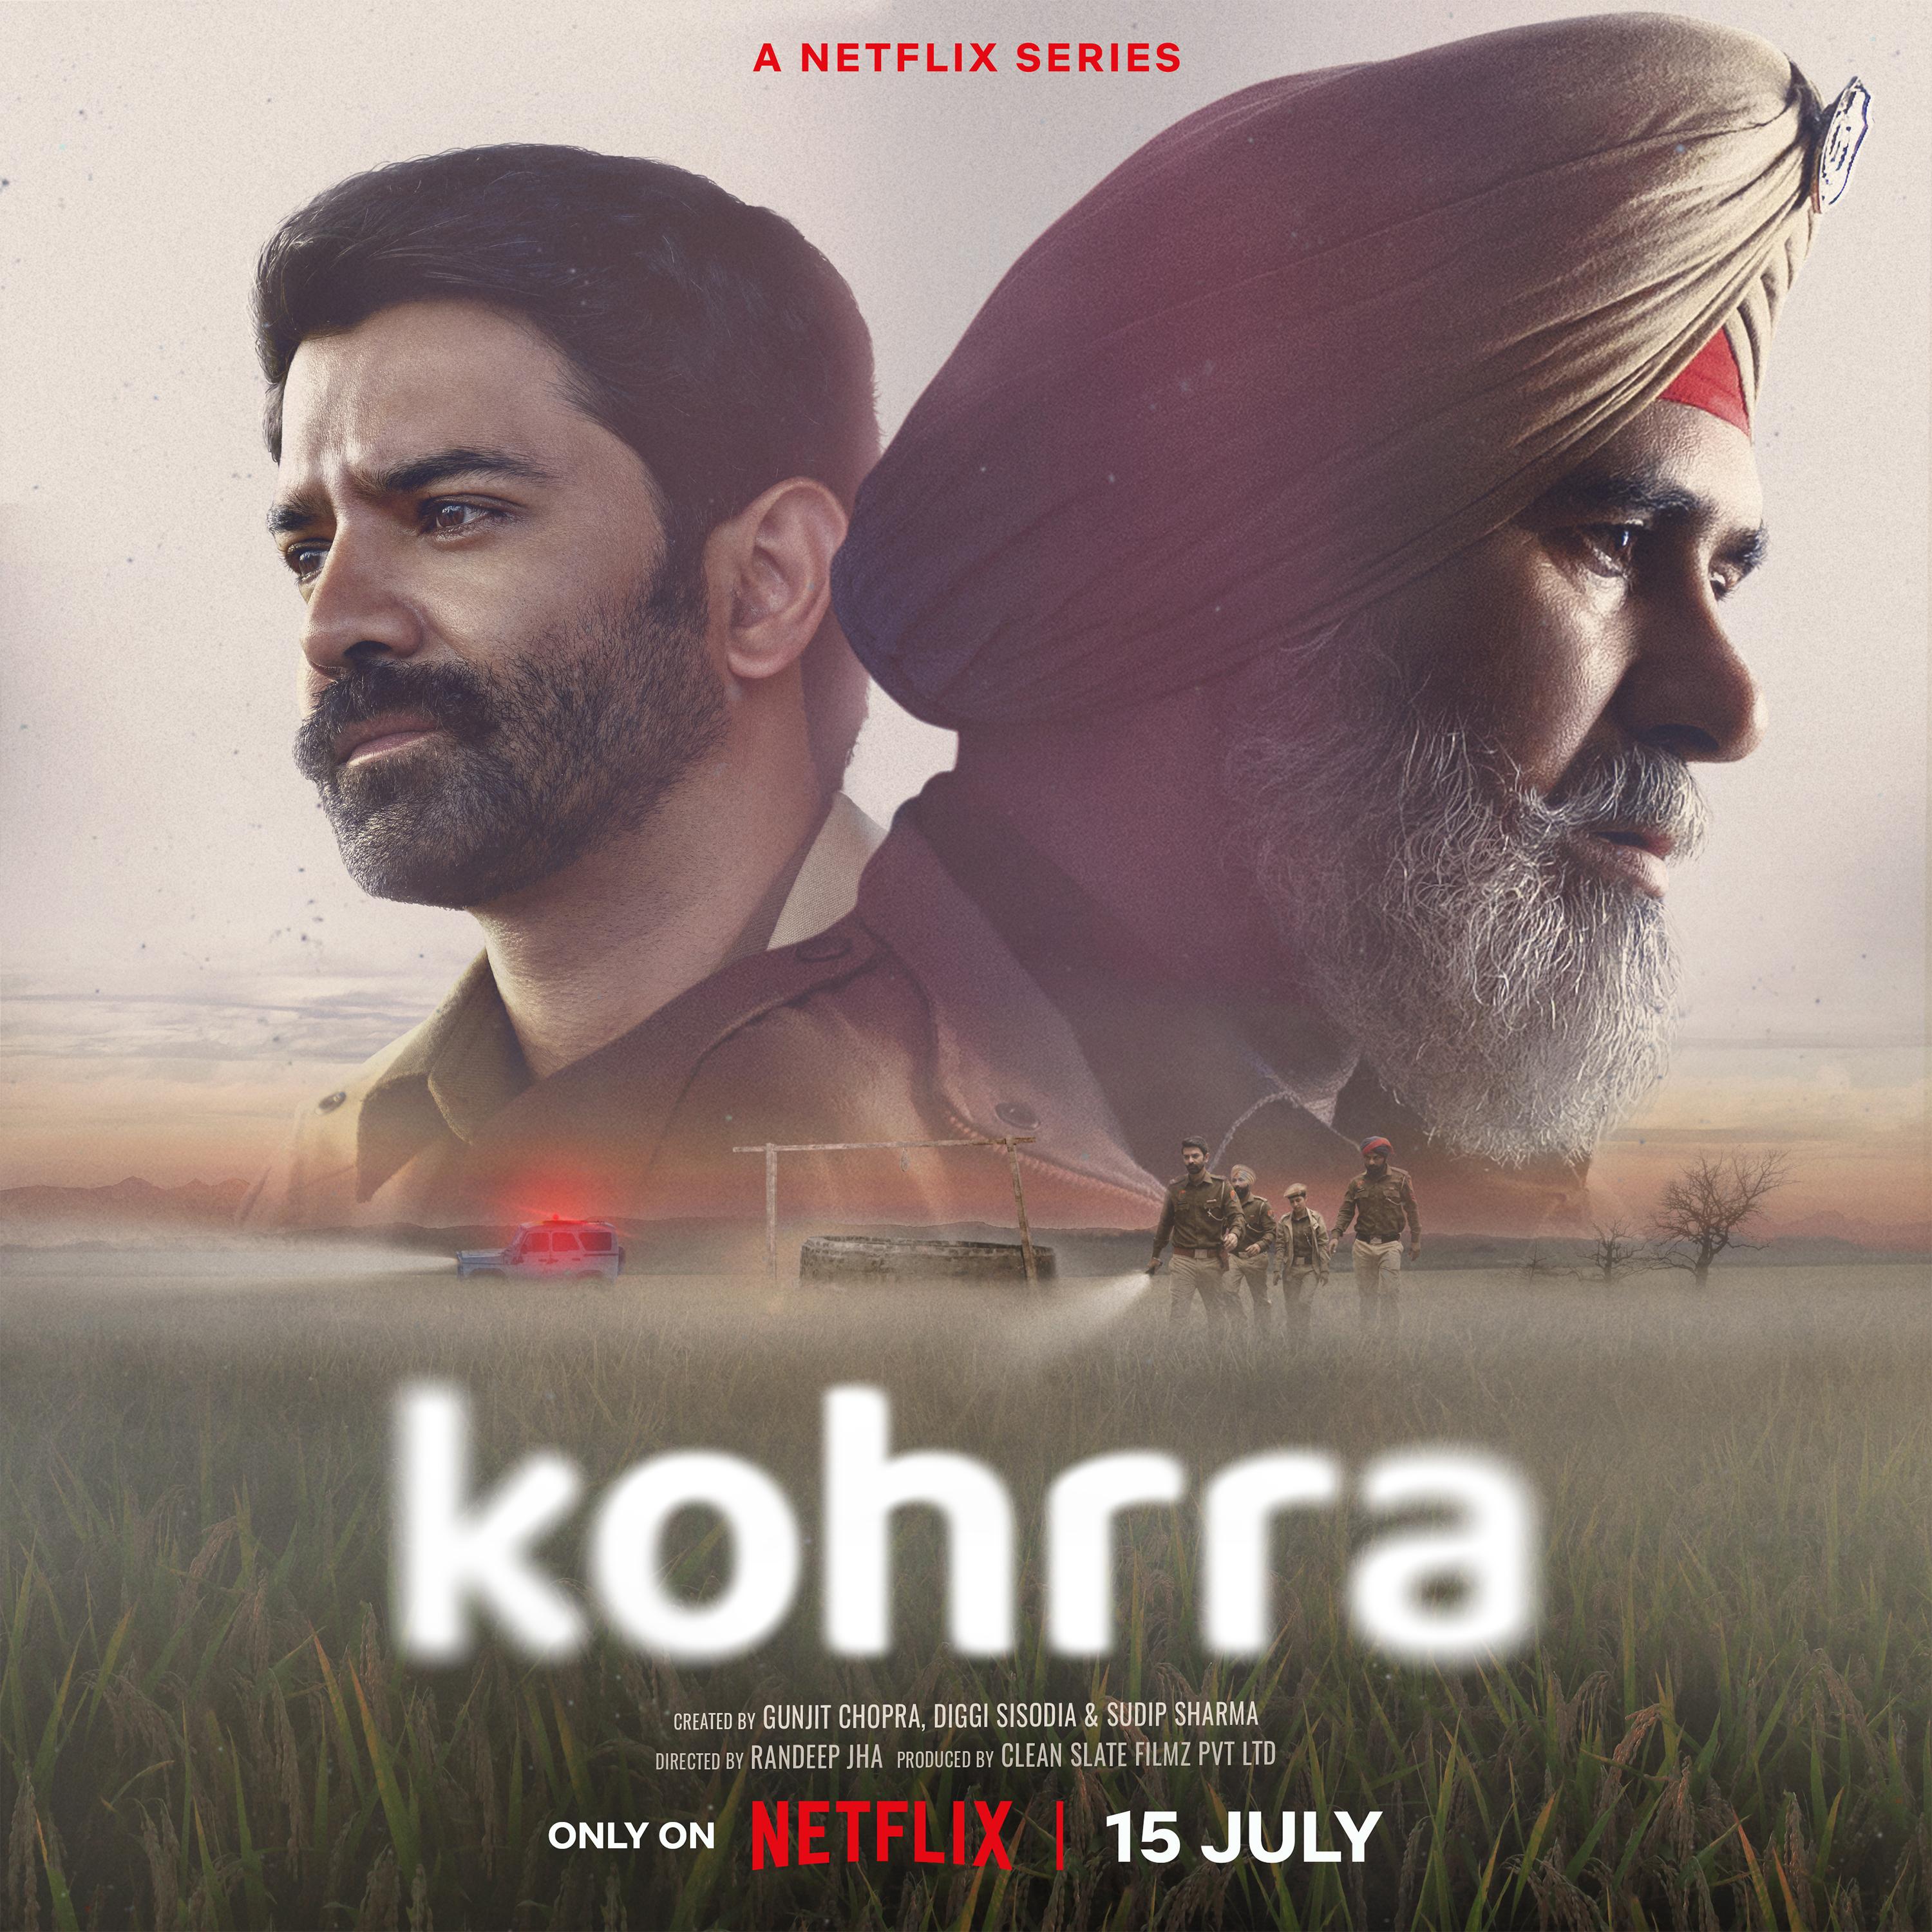 TV ratings for Kohrra (कोहरा) in Irlanda. Netflix TV series